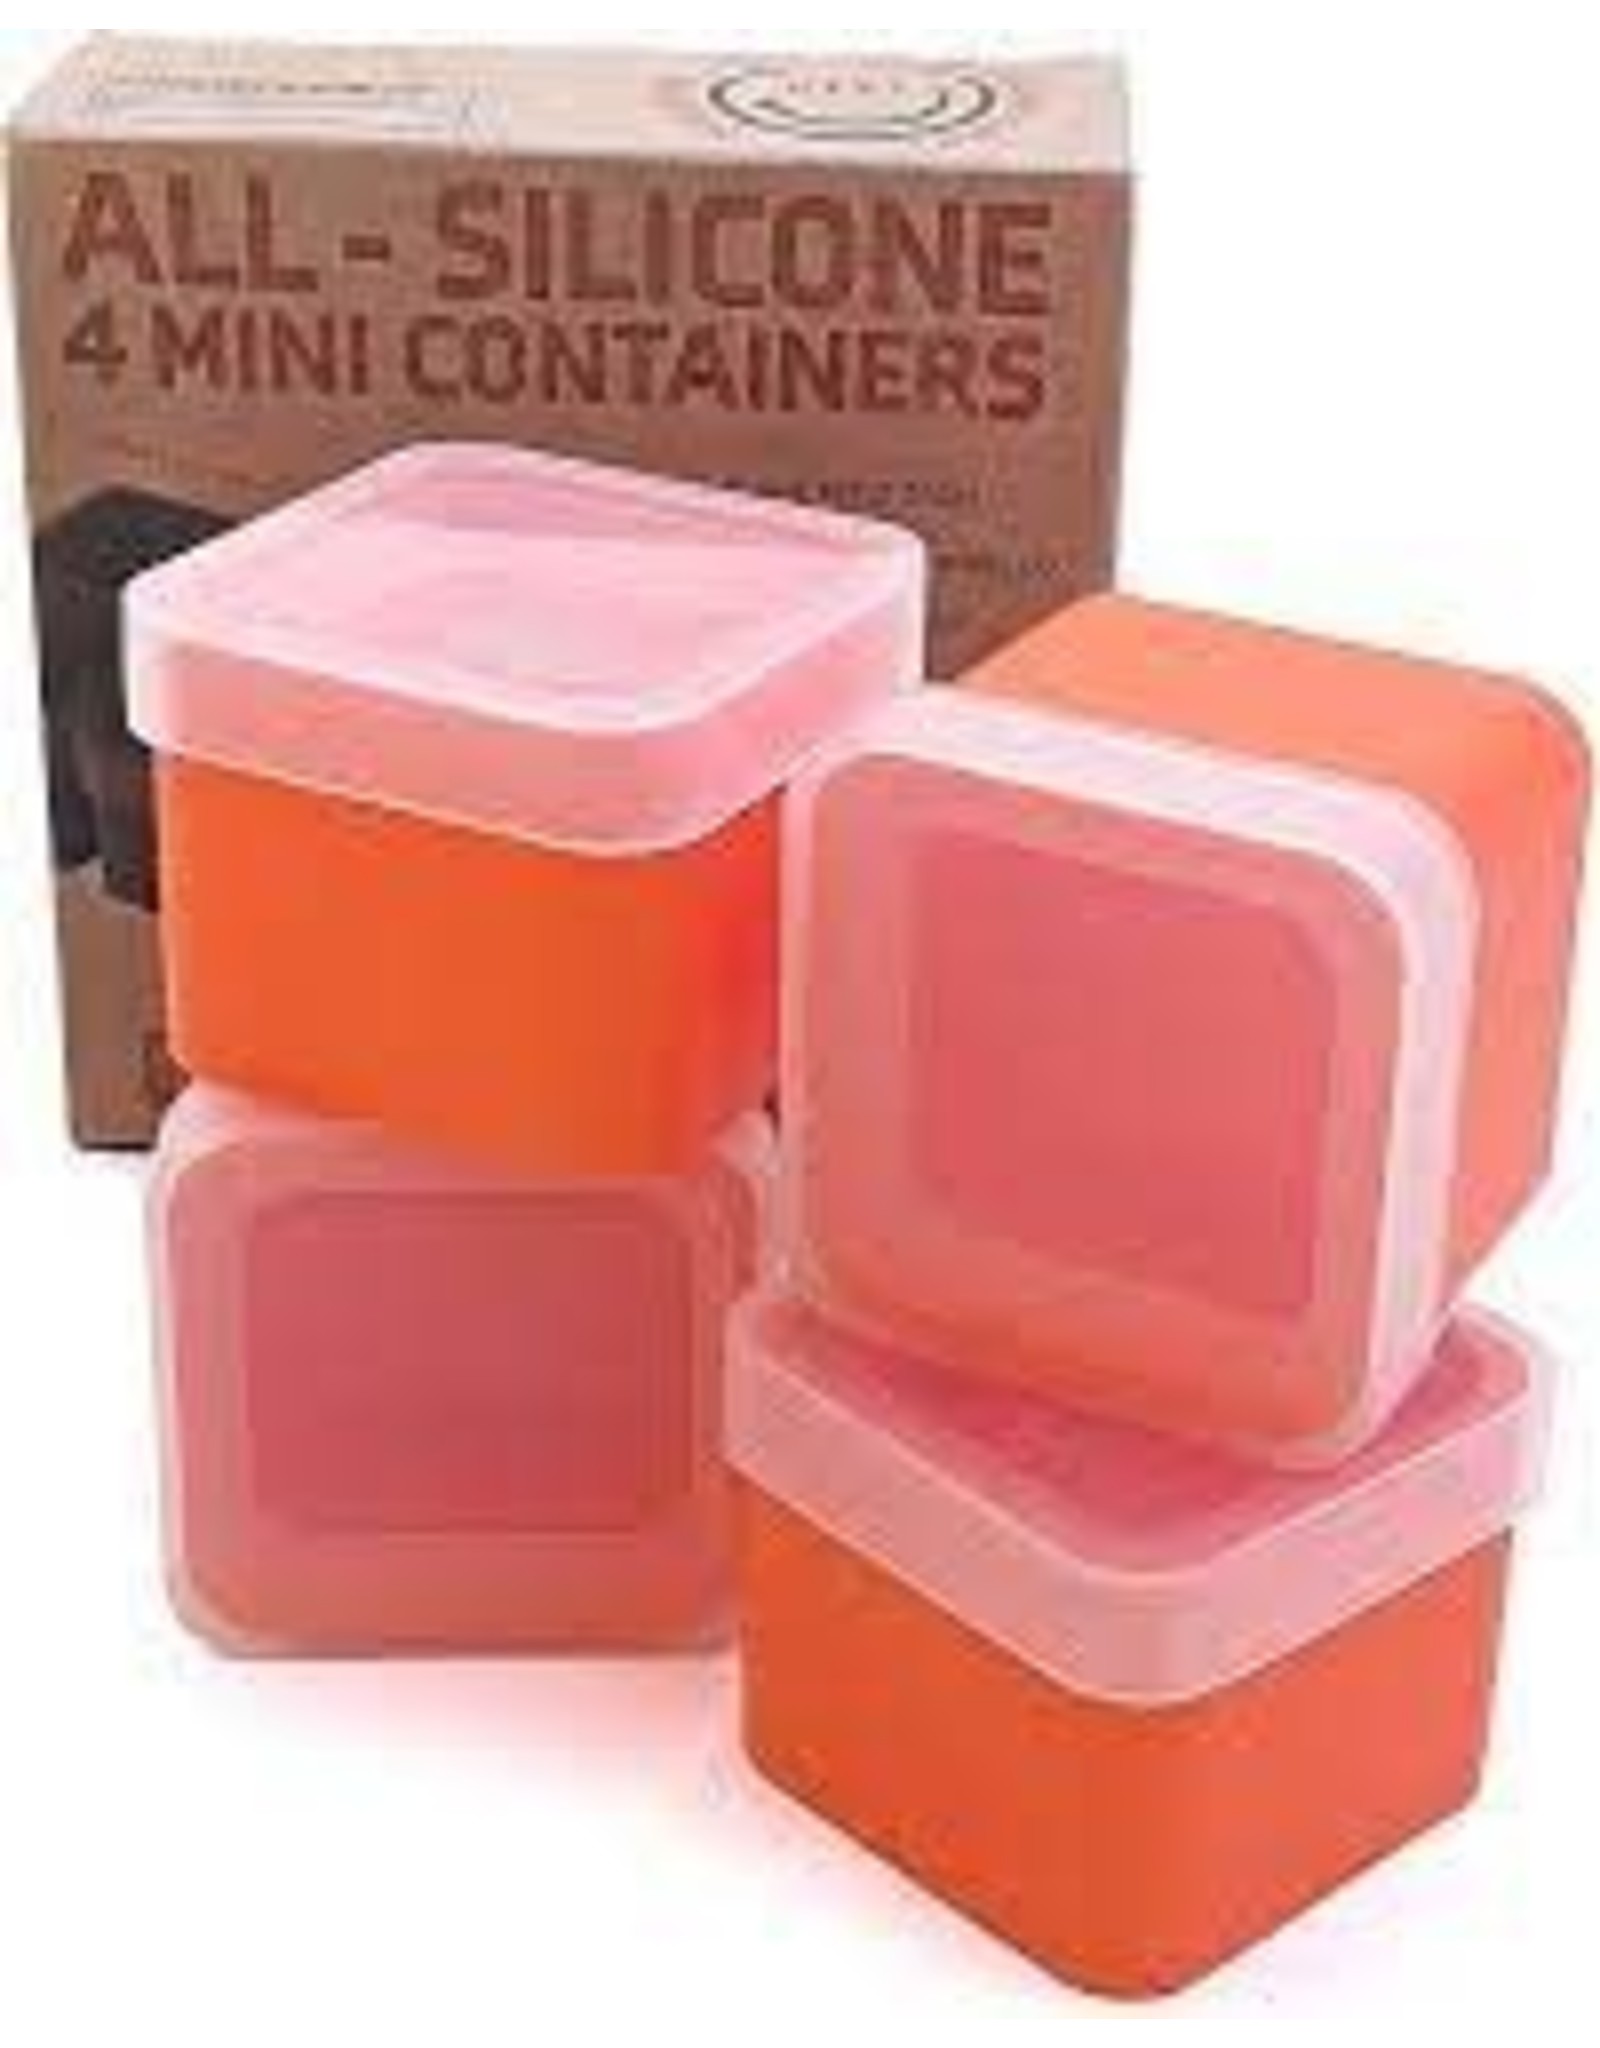 All Silicone 4 Mini Containers Orange